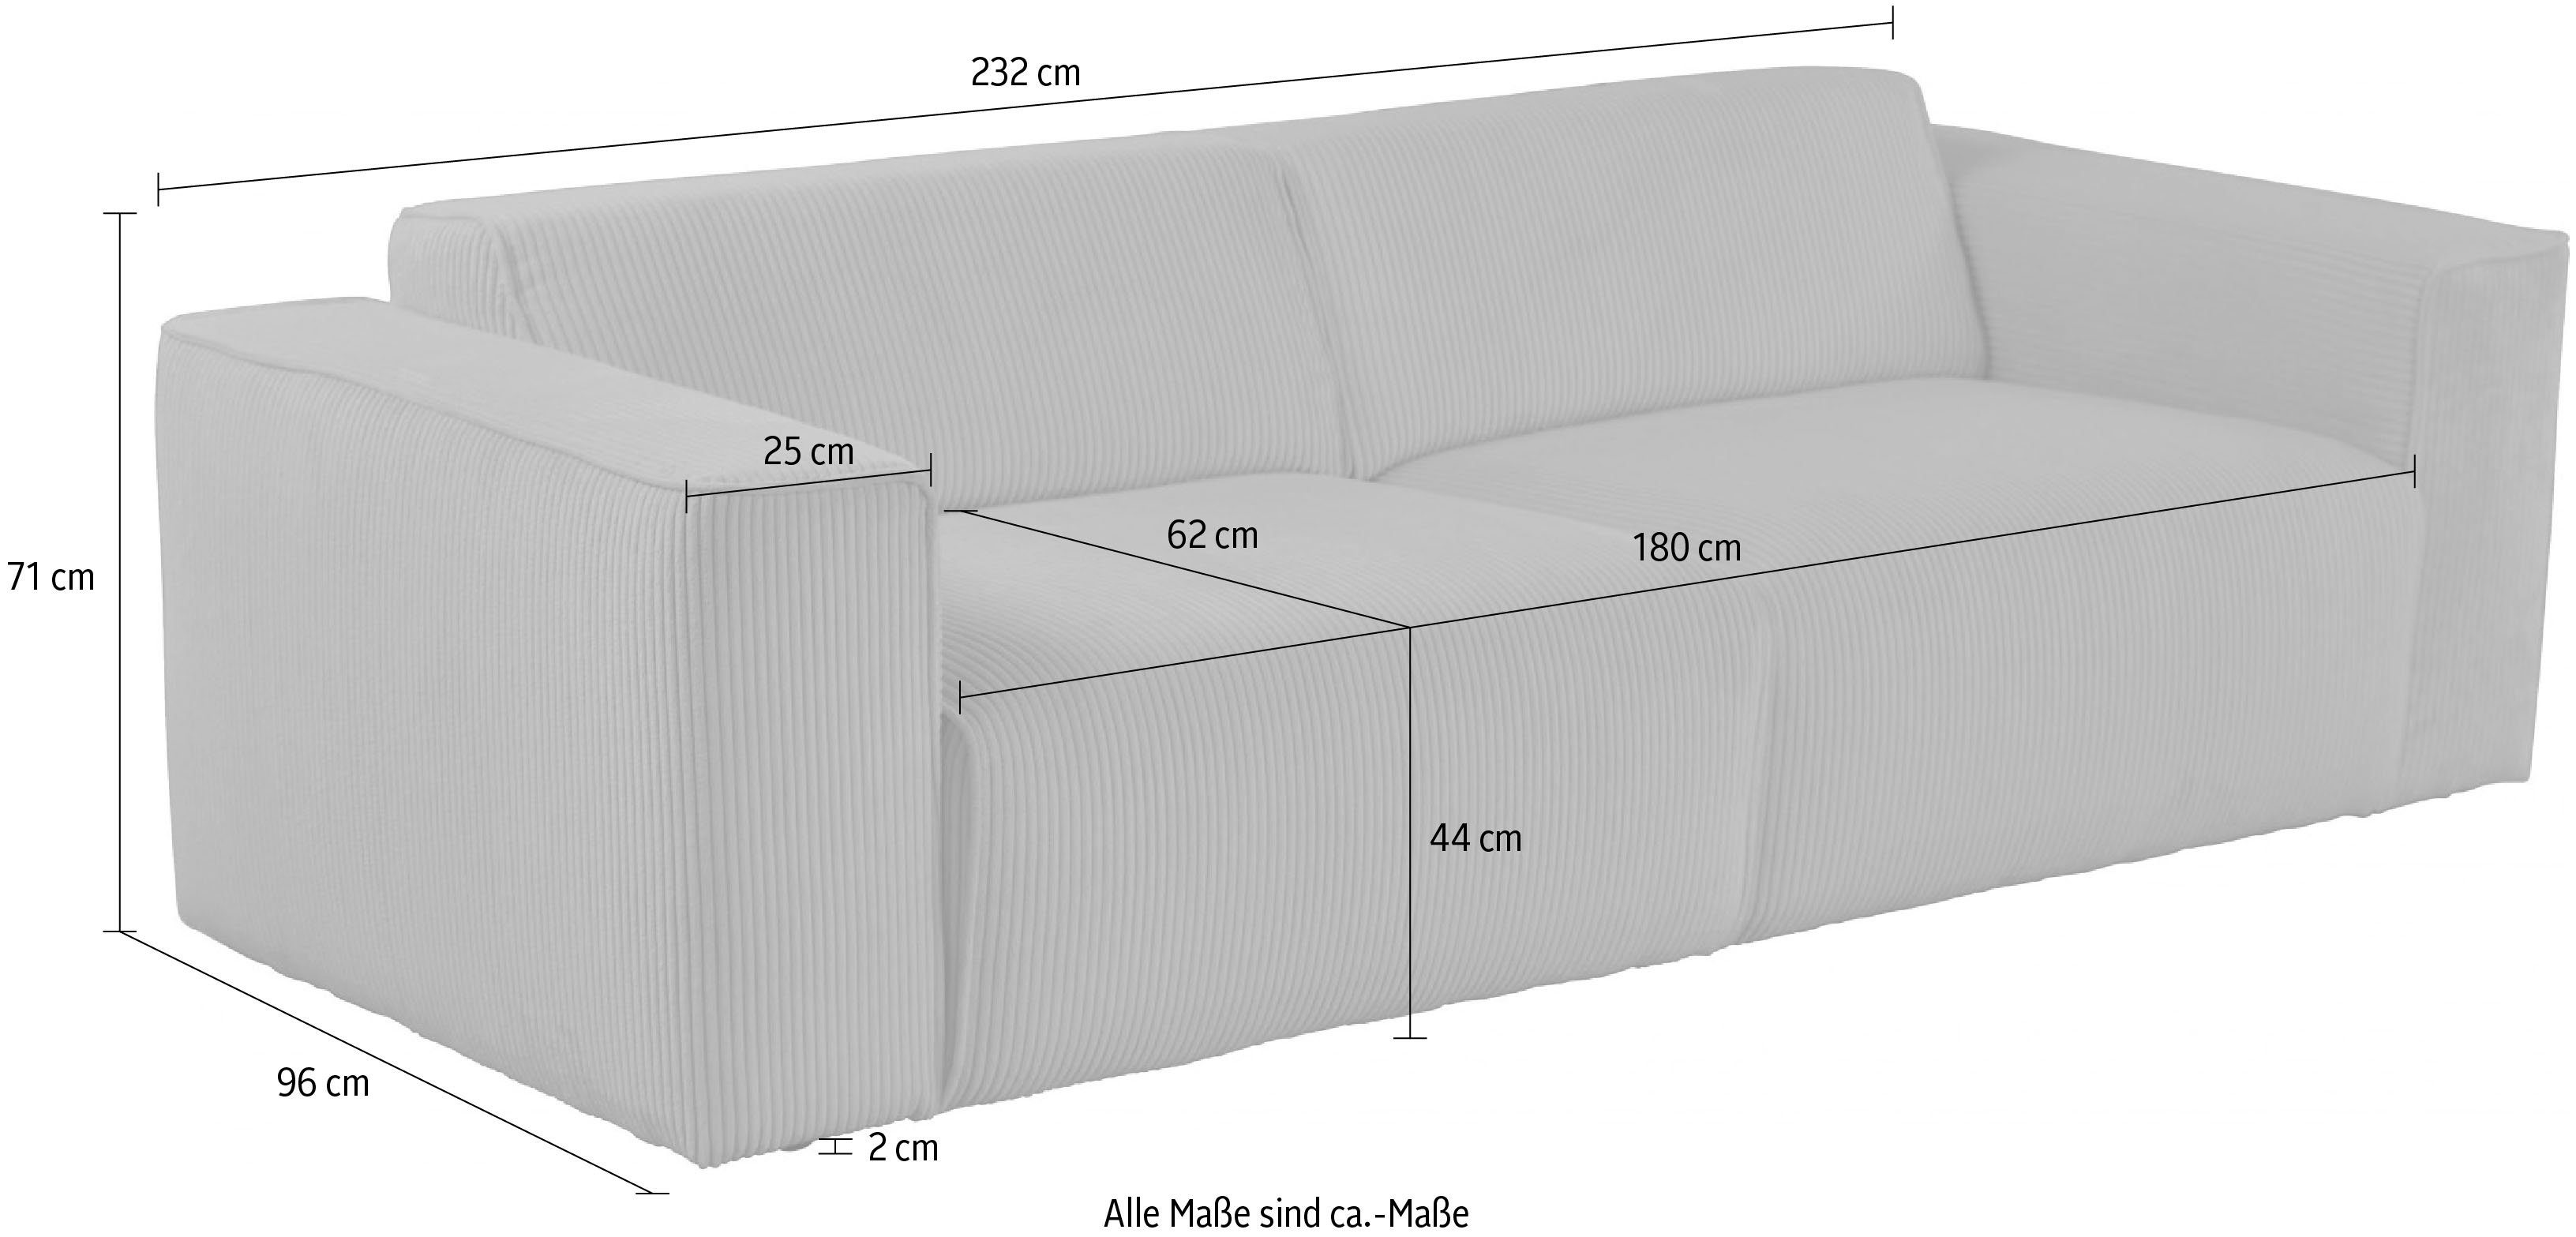 Kedernaht, Cord, grob andas Noord, 3-Sitzer Struktur, mit Struktur Luxus-Microfaser,